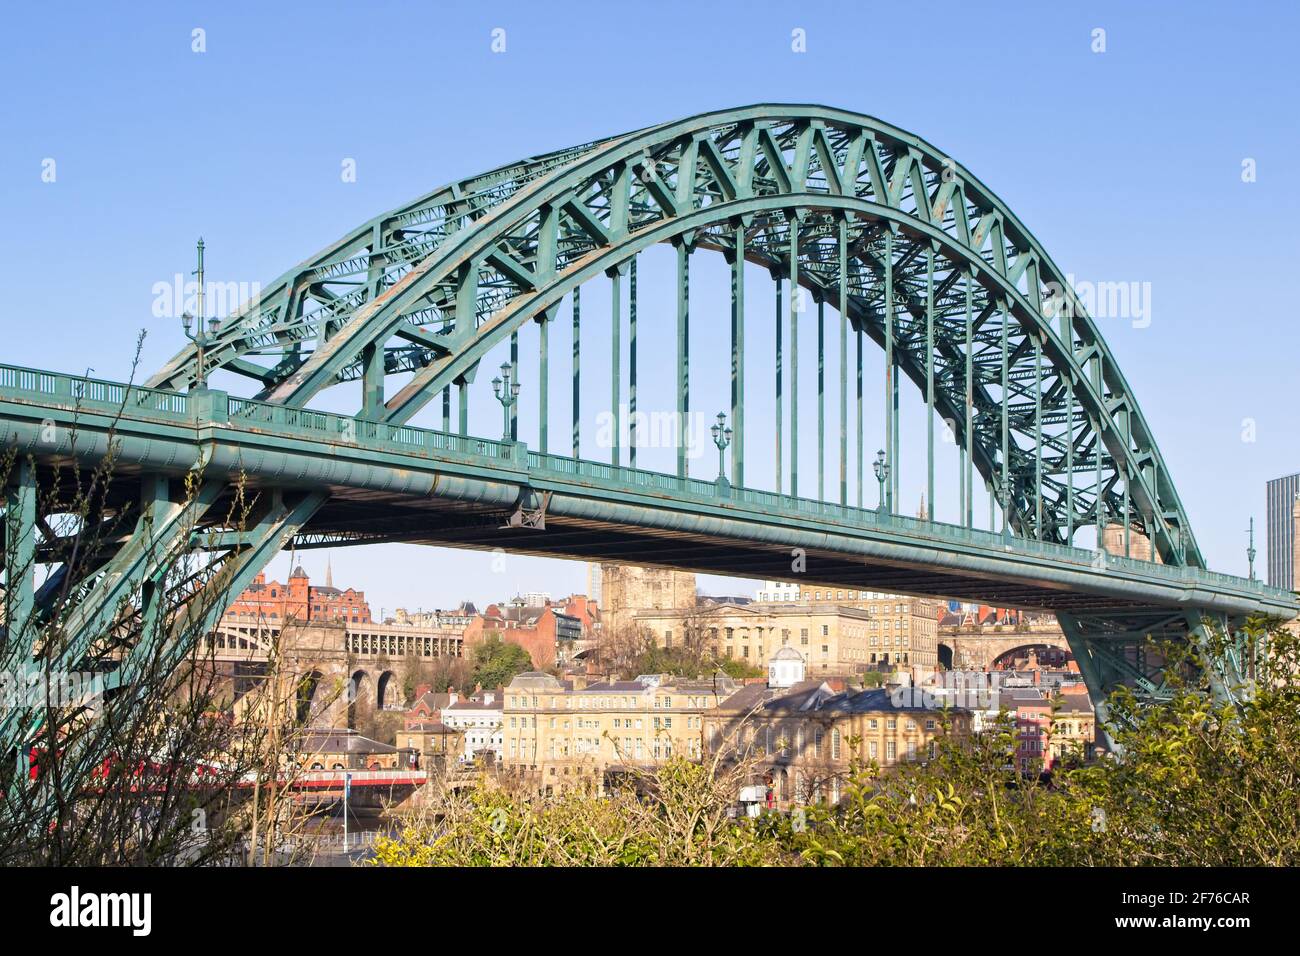 Die legendäre Tyne Bridge wurde 1928 eröffnet, um Newcastle und Gateshead zu verbinden, indem sie den Fluss Tyne in Tyne und Wear, Nordostengland, überspannt. Stockfoto